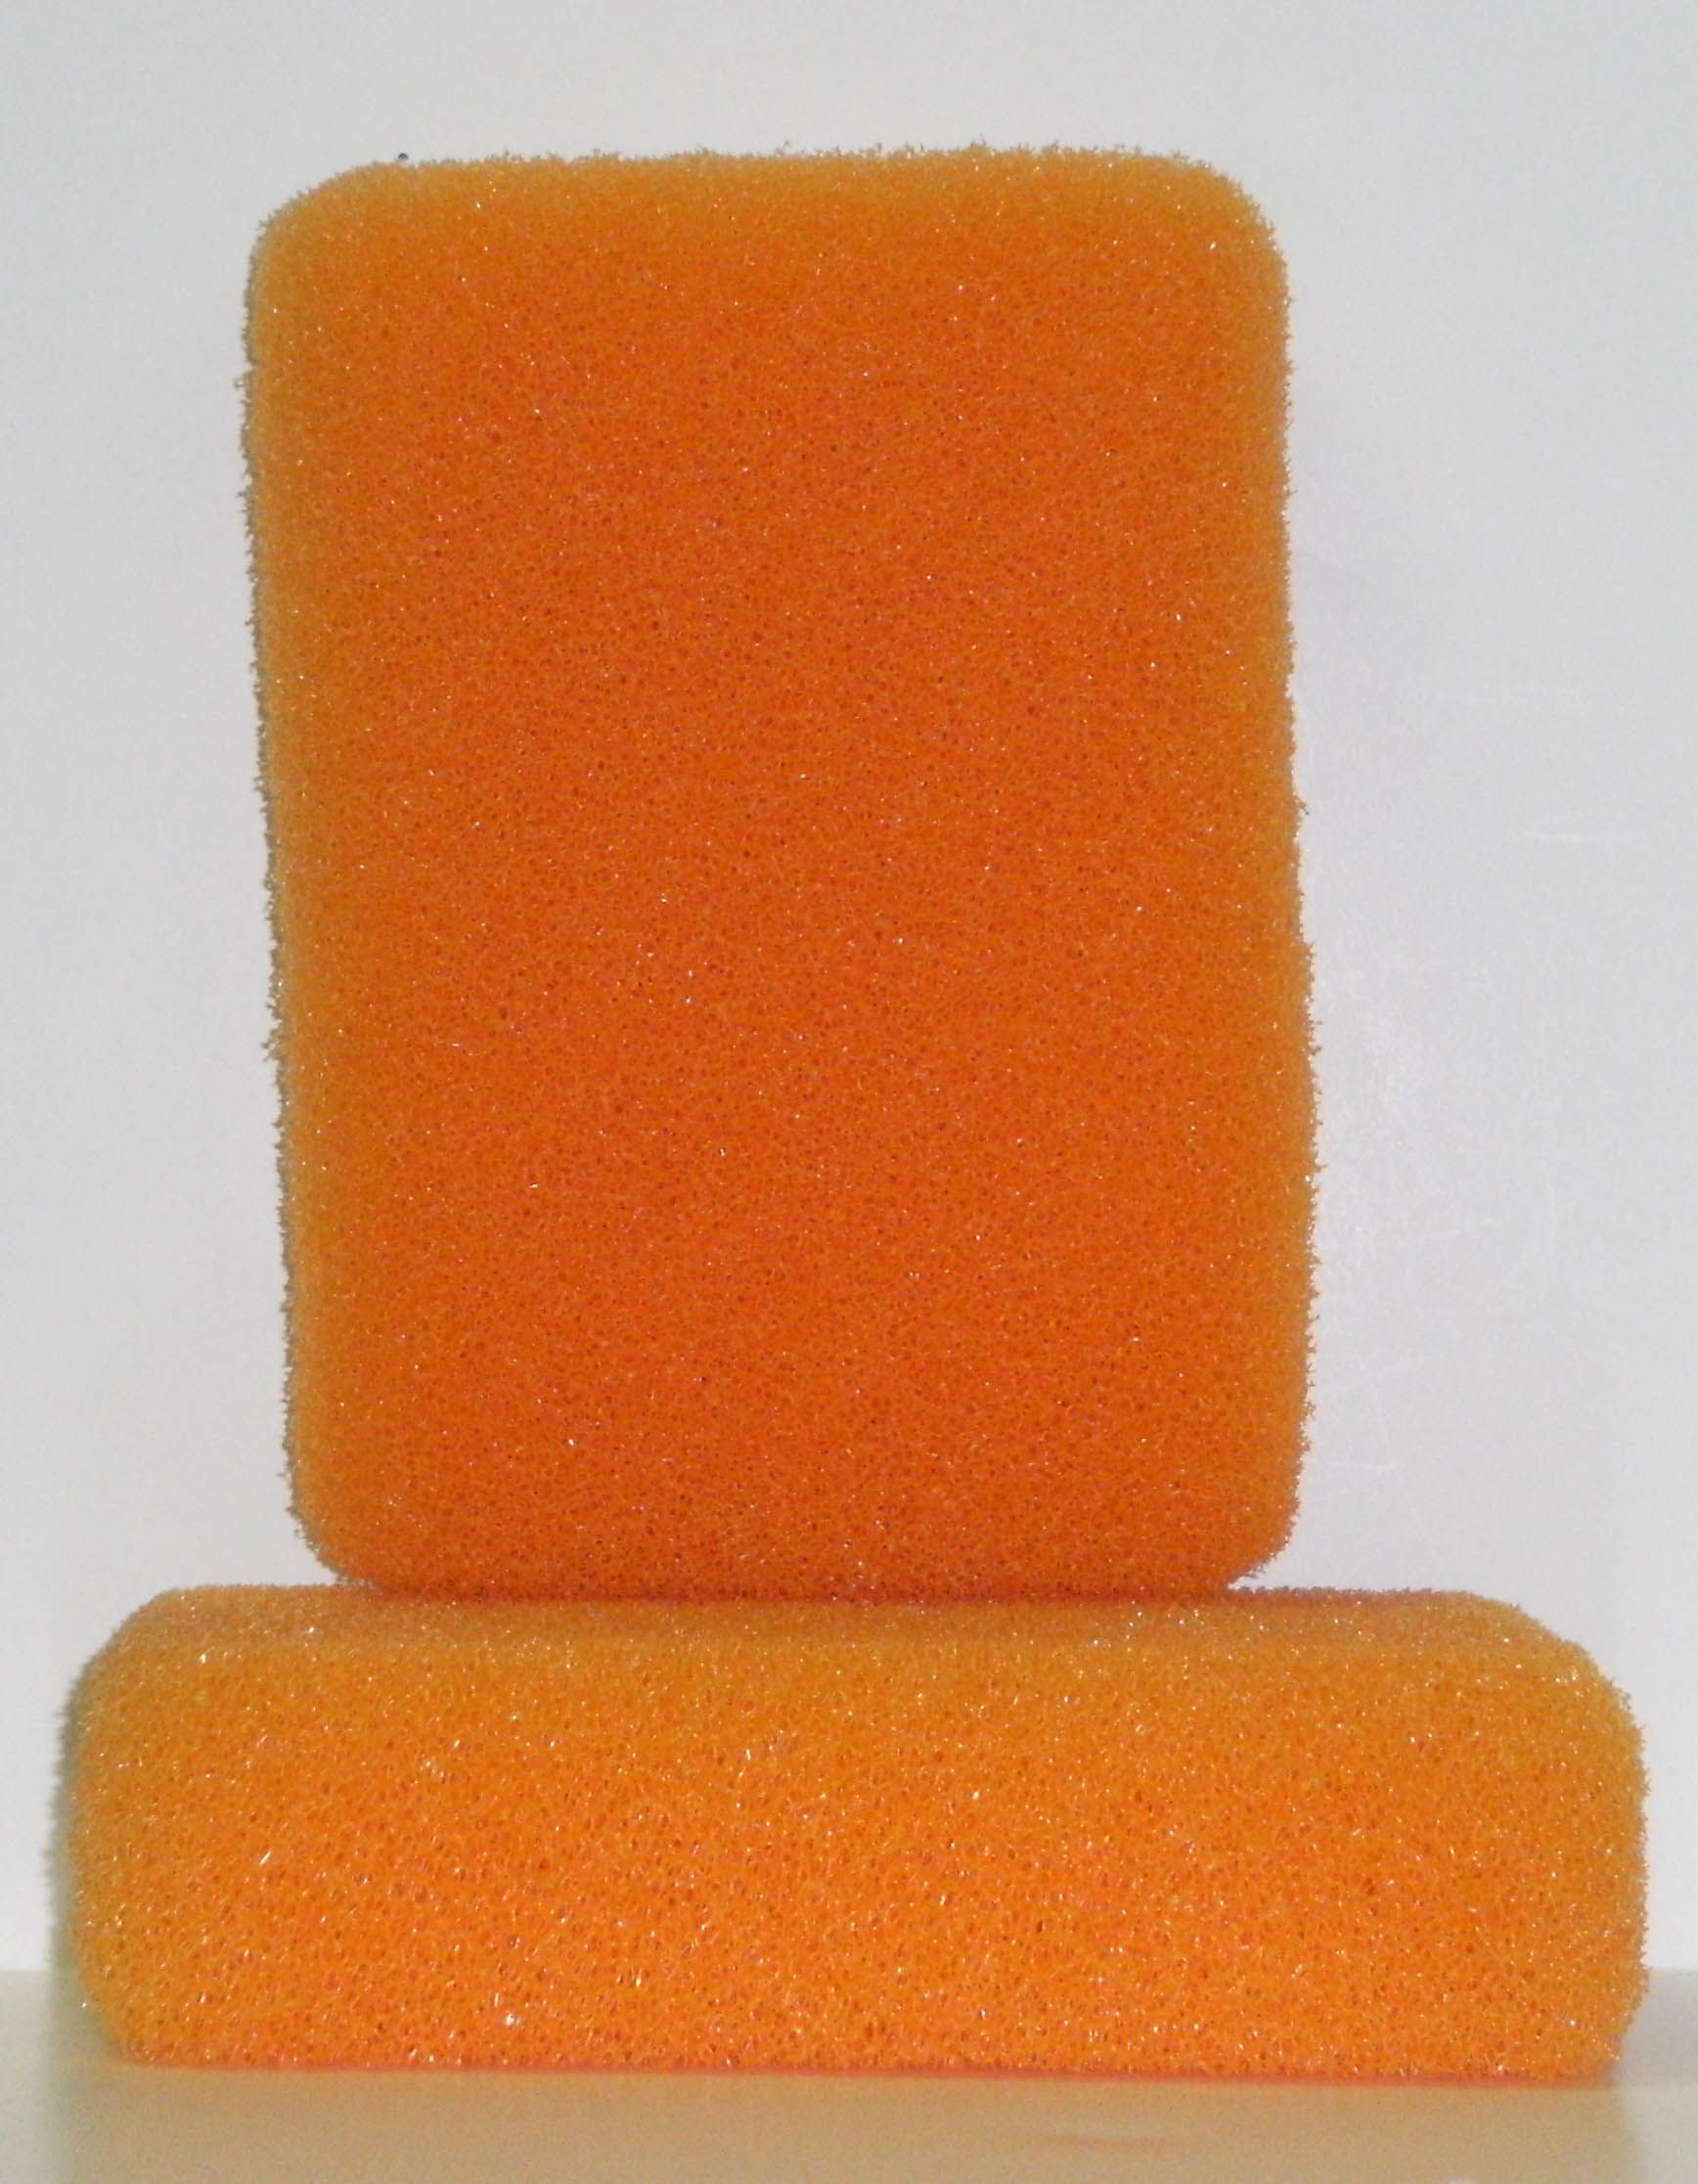 Goldblatt G02090 Grout Sponge - Tile Grout Cleaners 